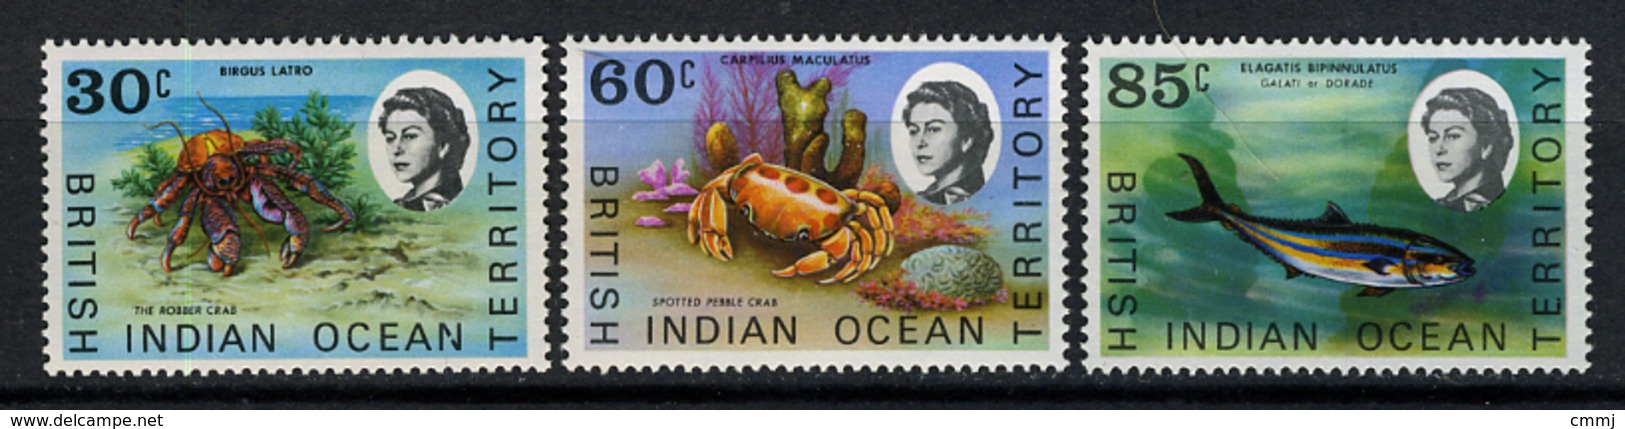 1968 - TERRITORIO BRITANNICO DELL'OCEANO INDIANO - Mi. Nr. 36/38 - NLH - (CW2427.44) - Territorio Britannico Dell'Oceano Indiano